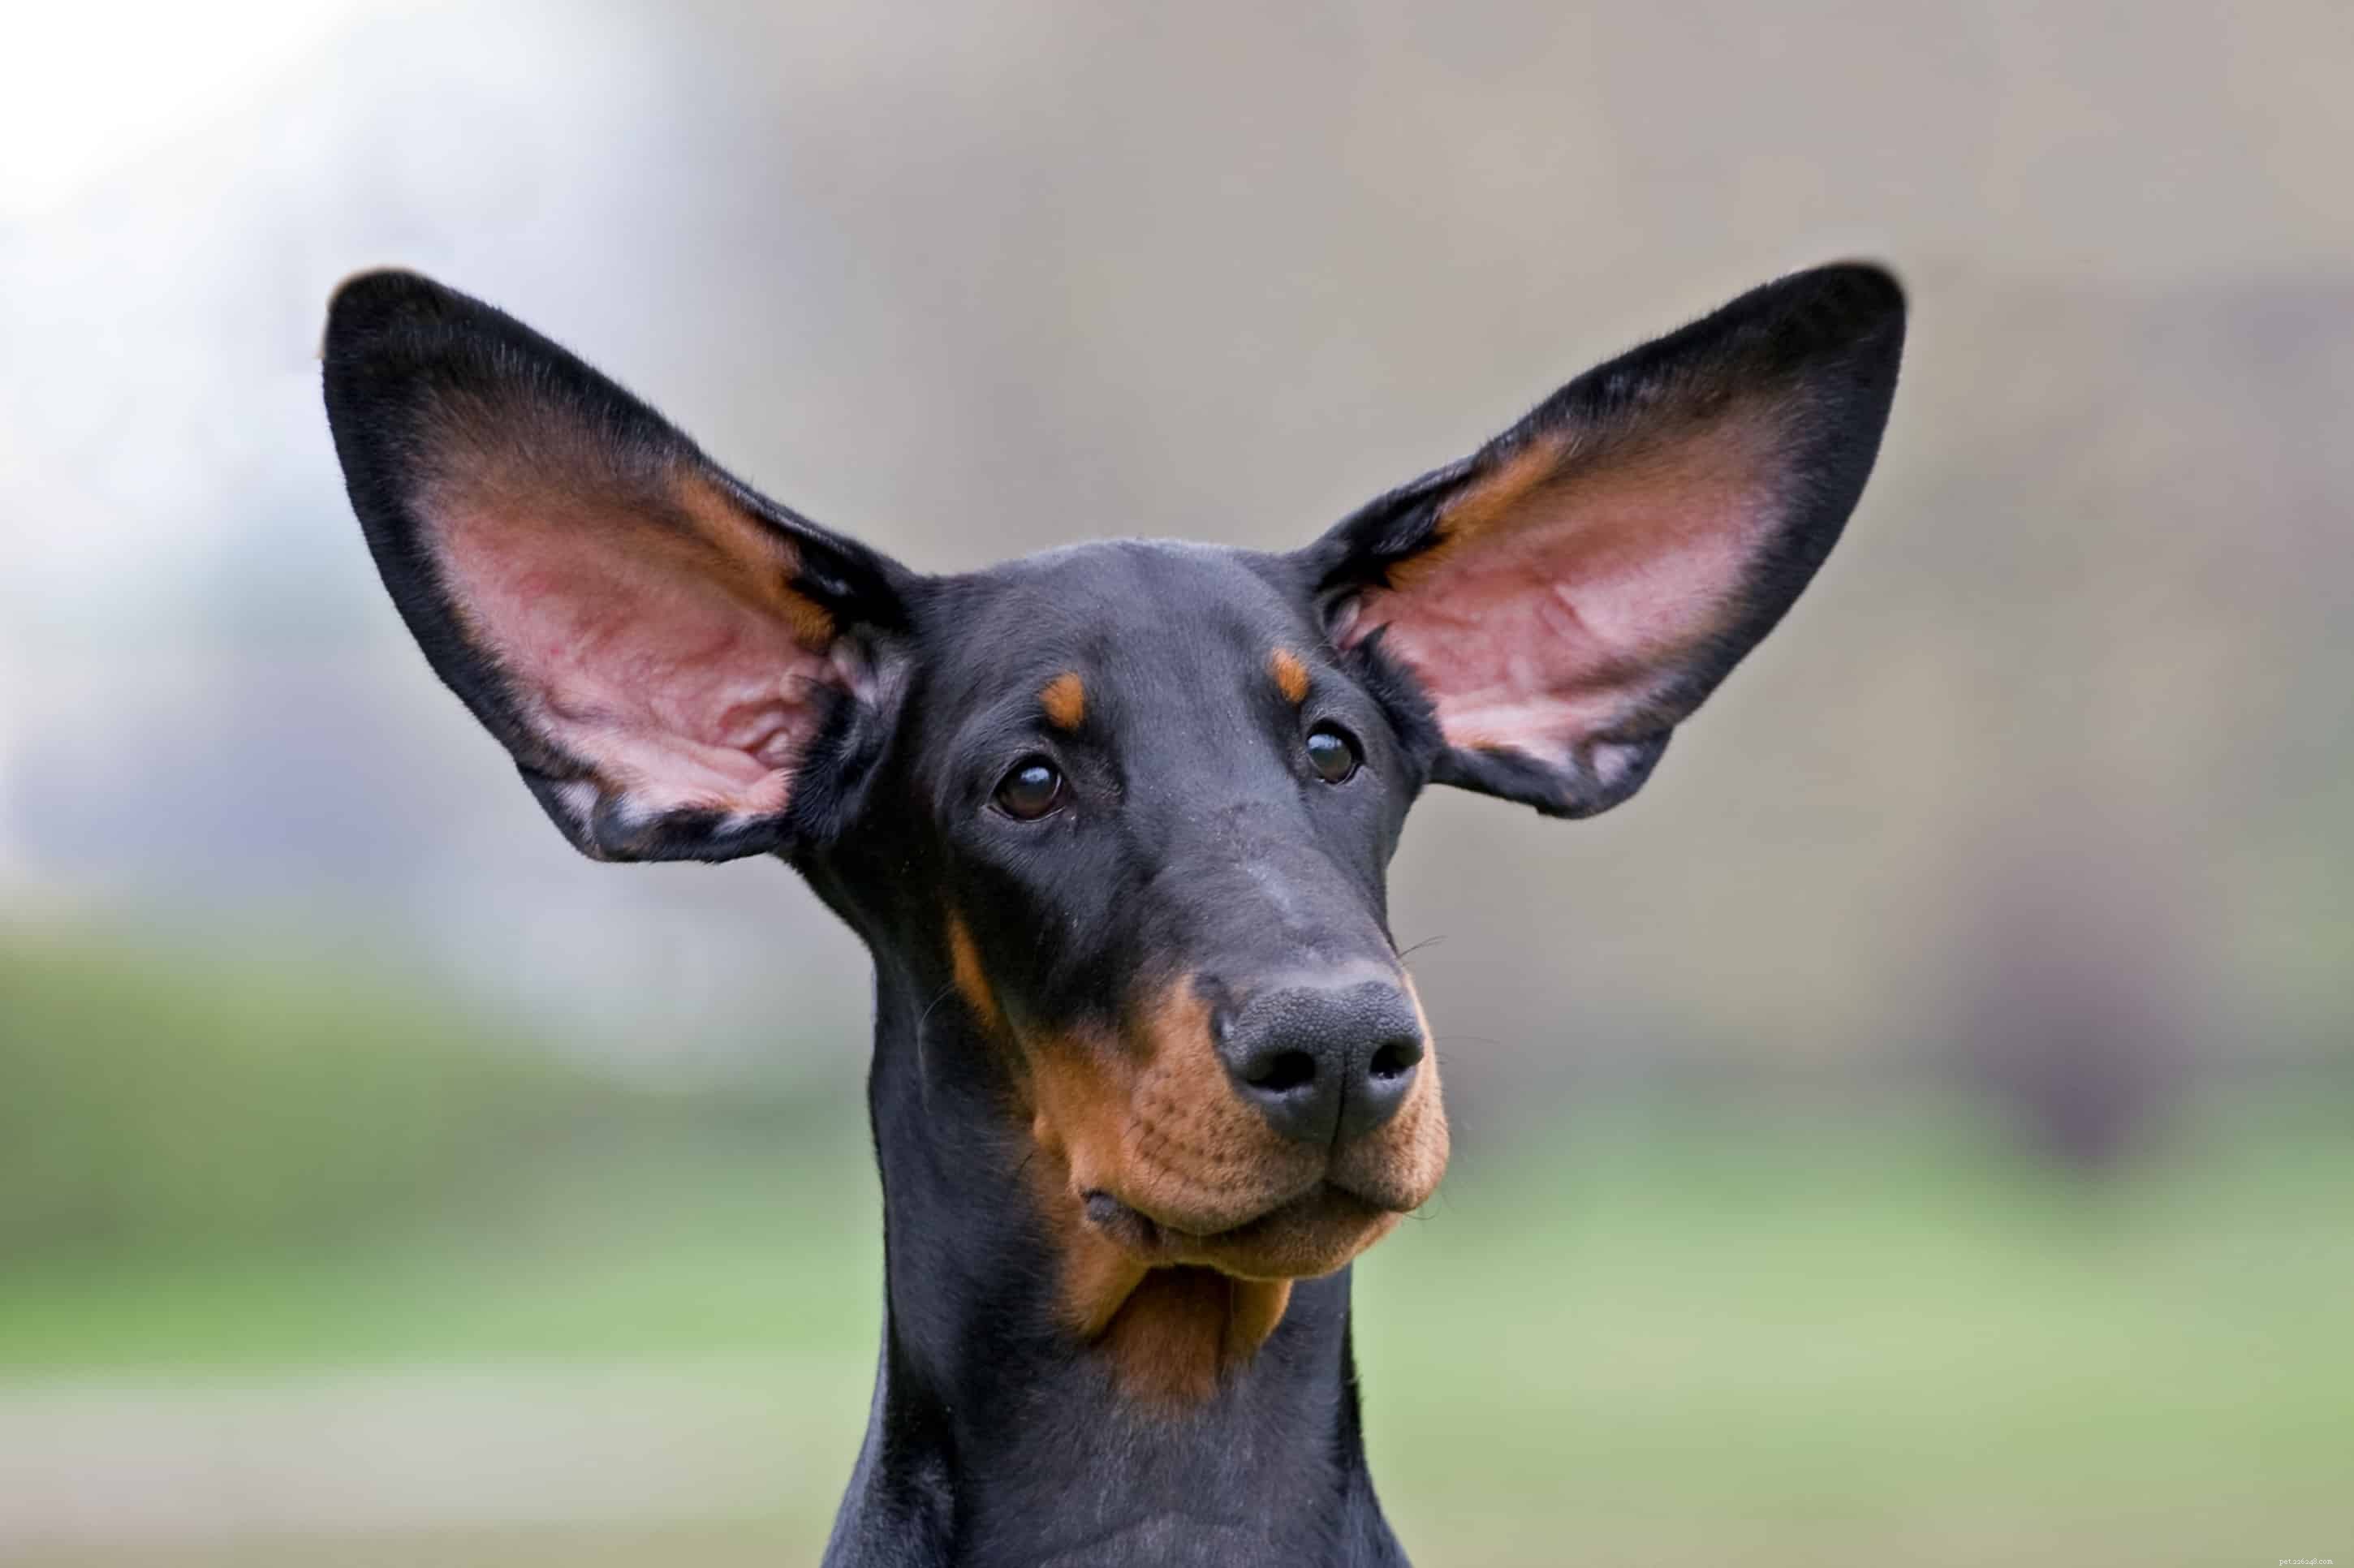 Porozumění tajnému jazyku psů:Hodnocení psích uší